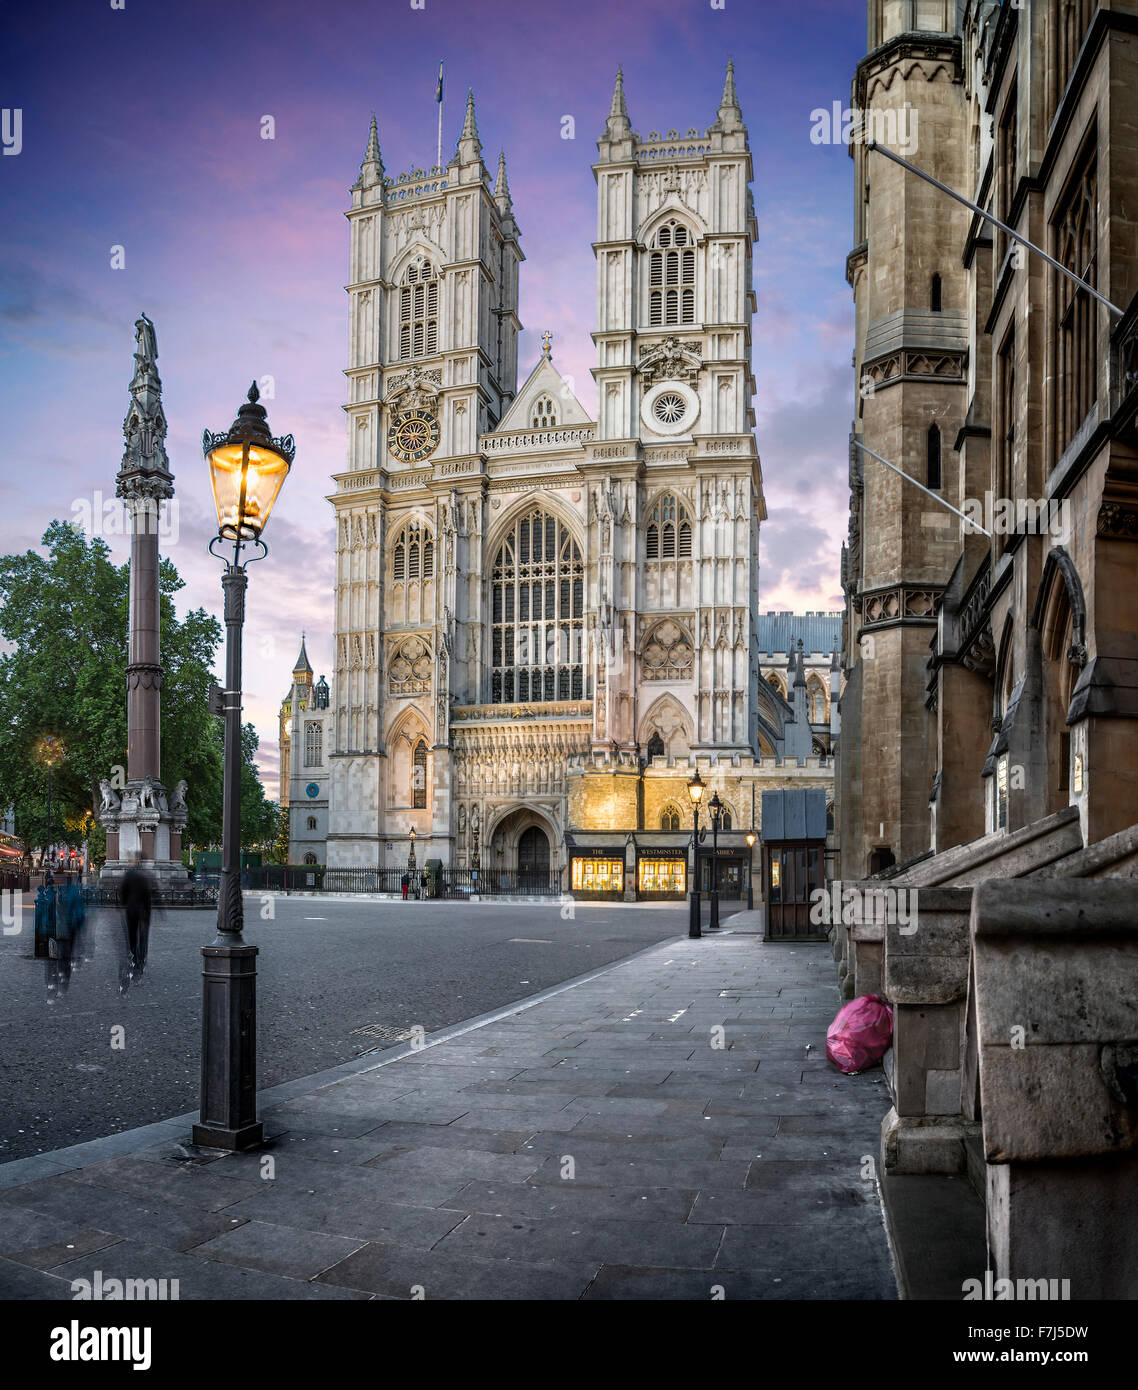 La Abadía de Westminster, Londres, Reino Unido. Foto de stock